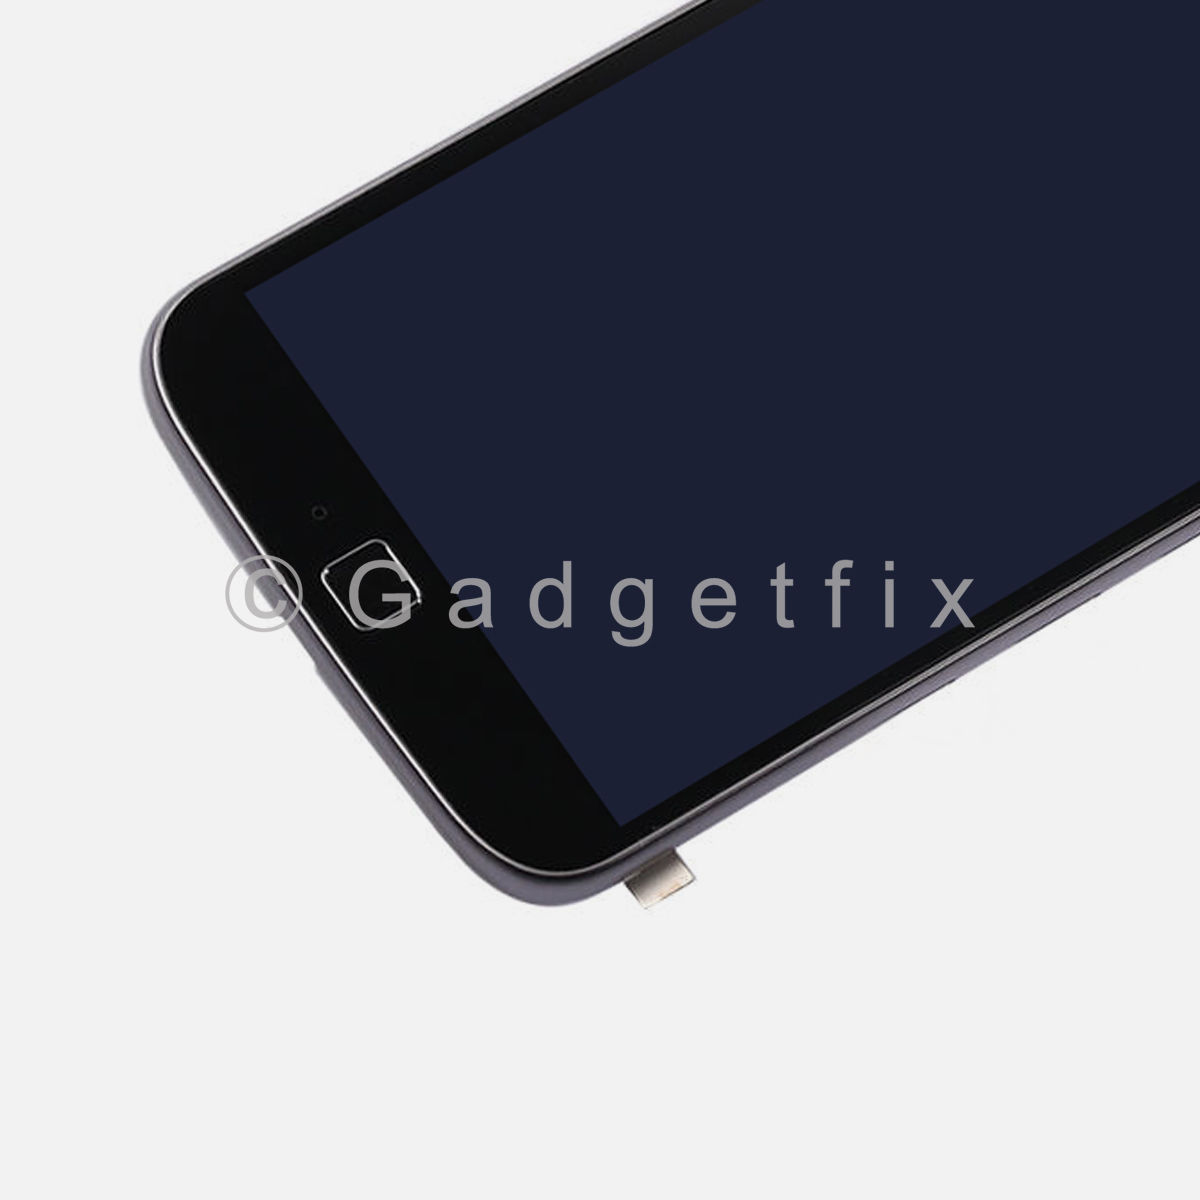 LCD Touch Screen Digitizer + Frame For Motorola Moto G4 Plus XT1644 XT1643 XT1642 XT1641